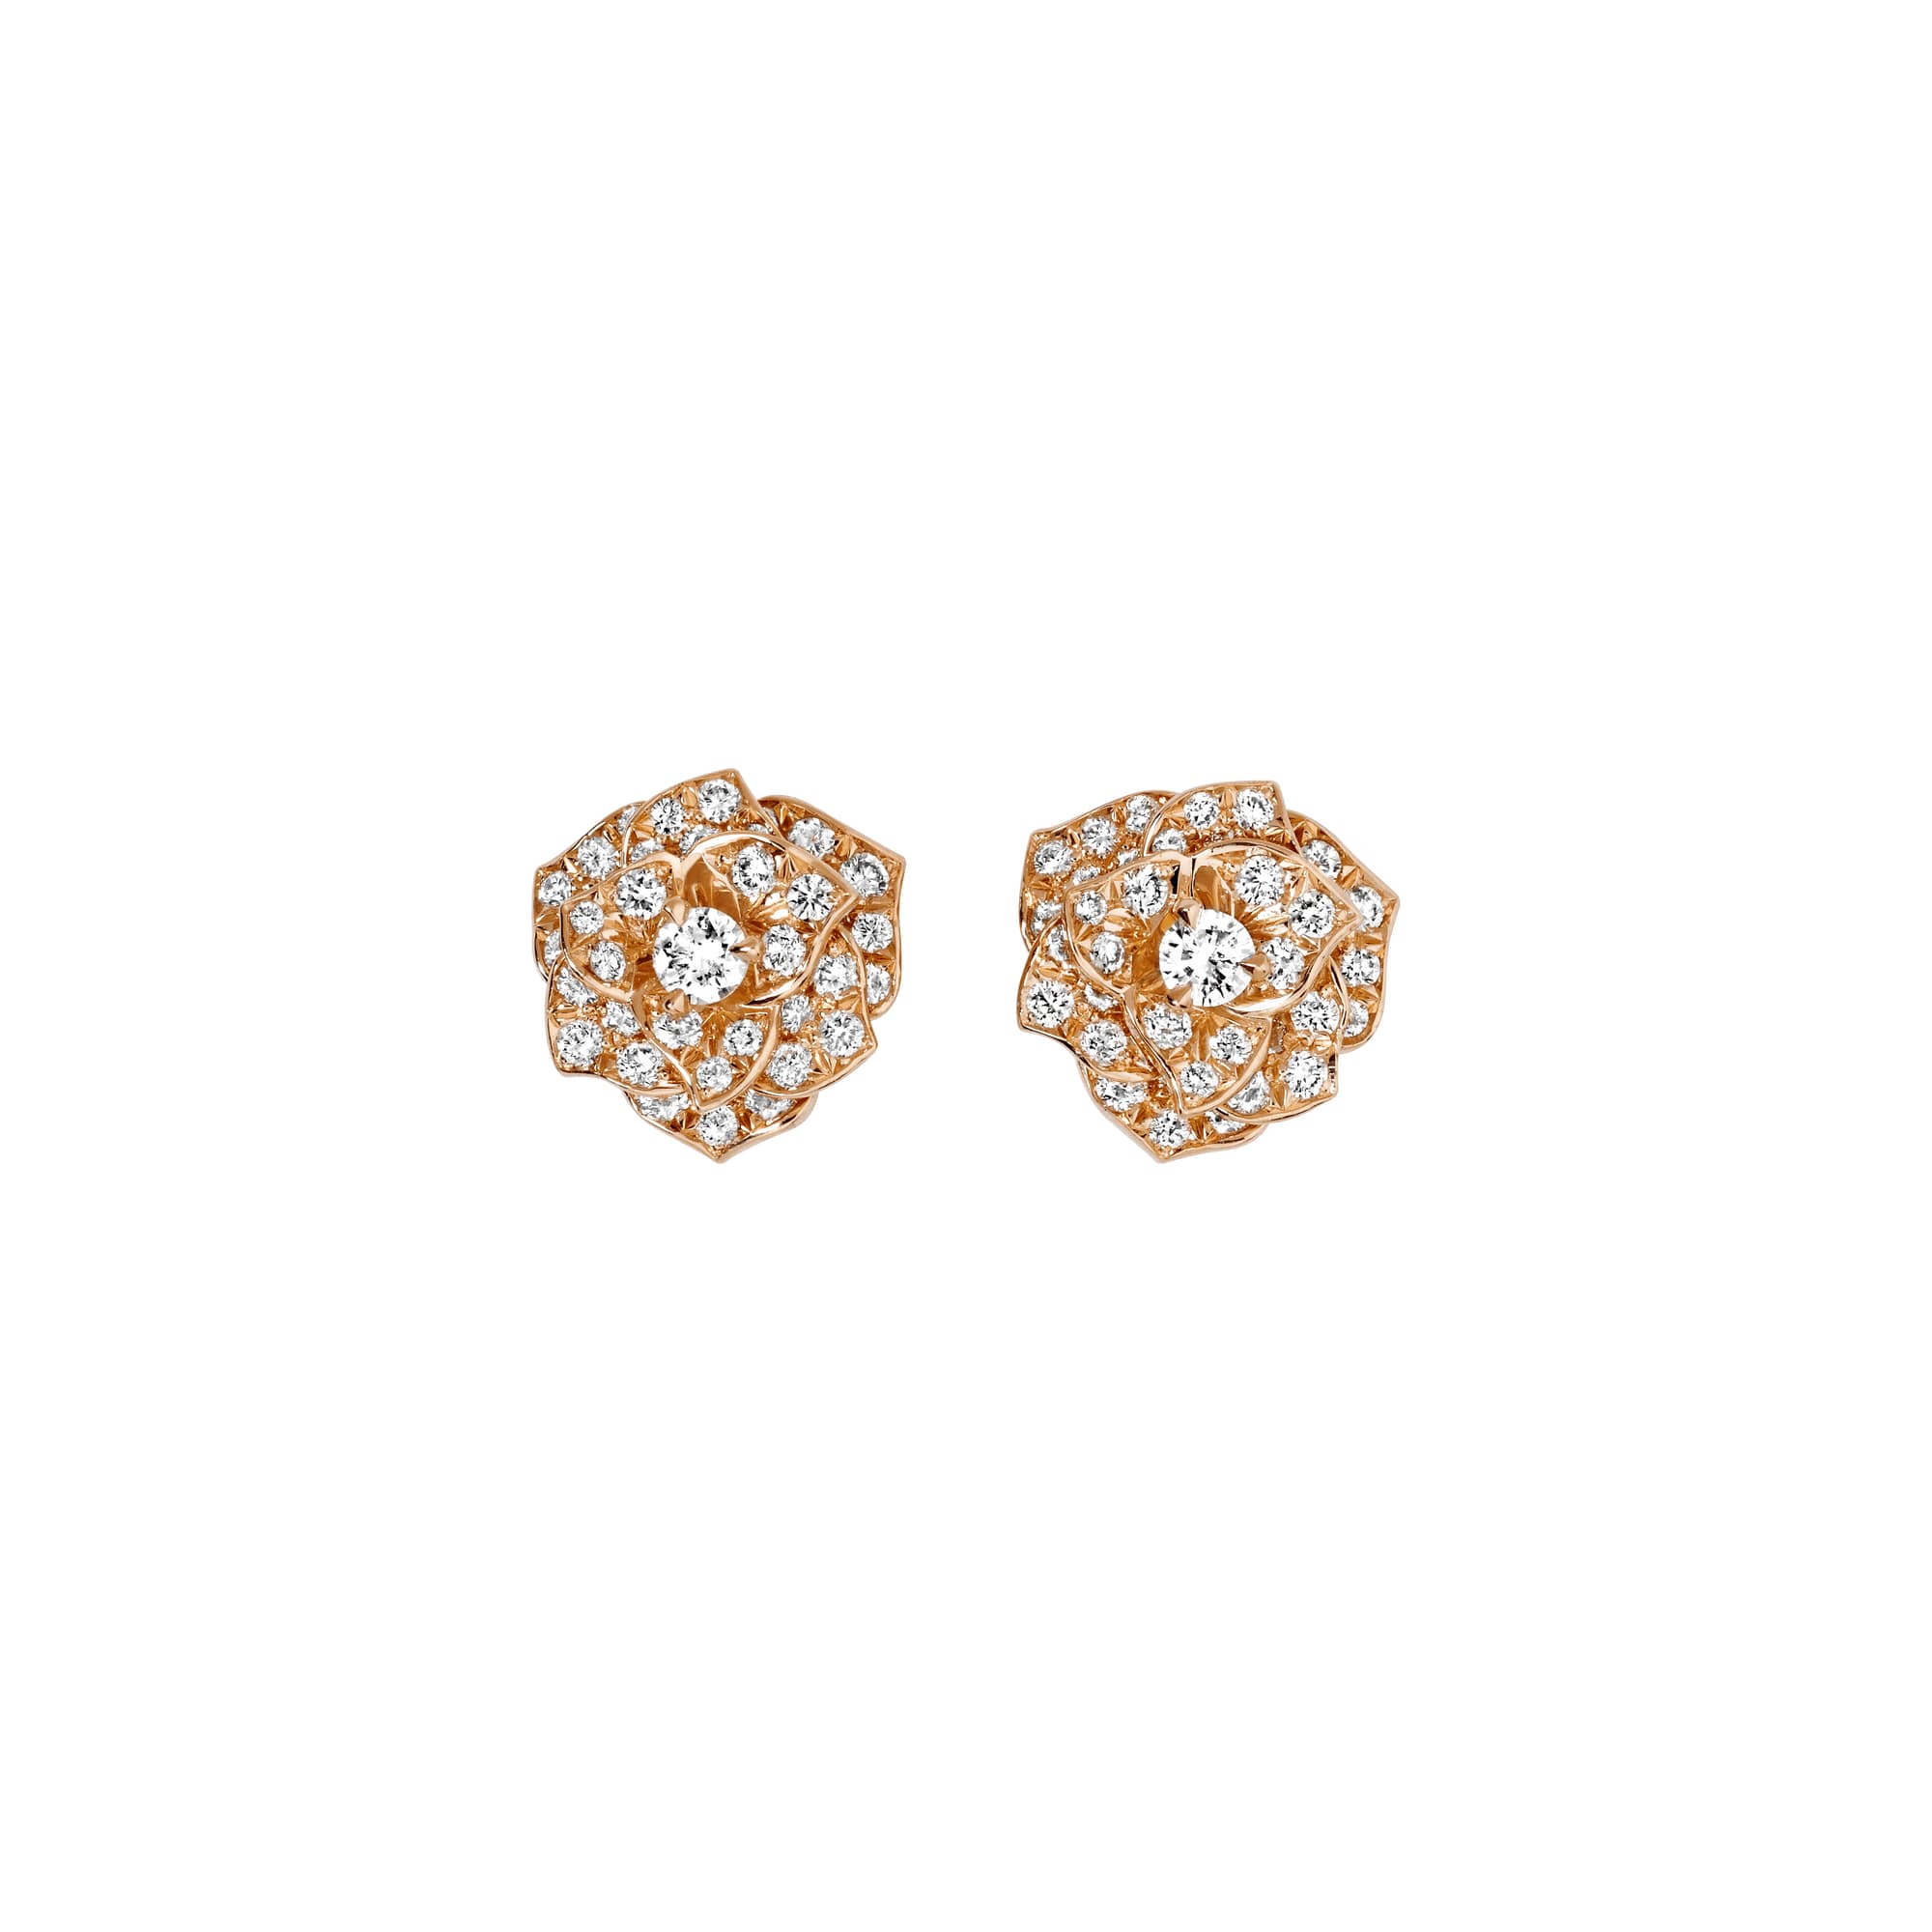 Rose gold Diamond Earrings G38U0050 - Piaget Luxury Jewelry Online